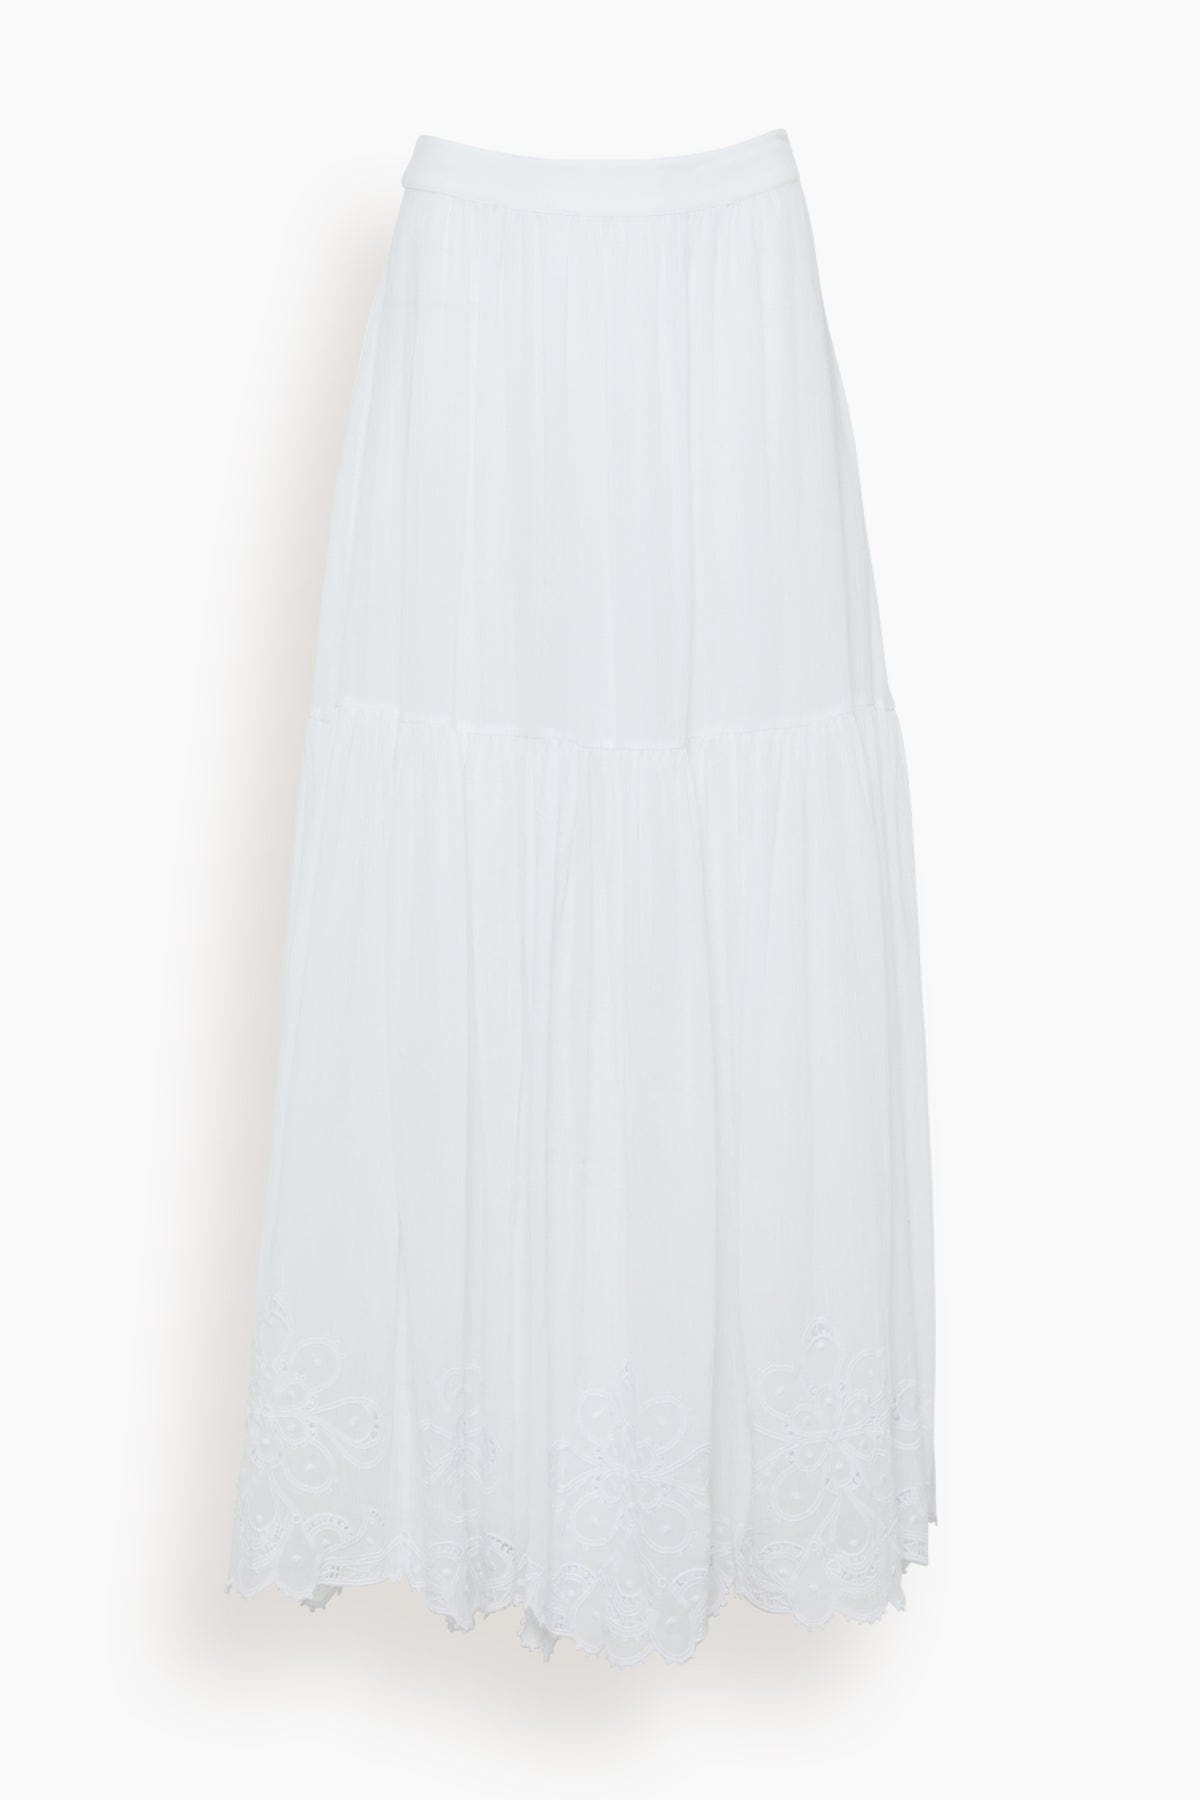 Antoinette Skirt in Blanc - 1